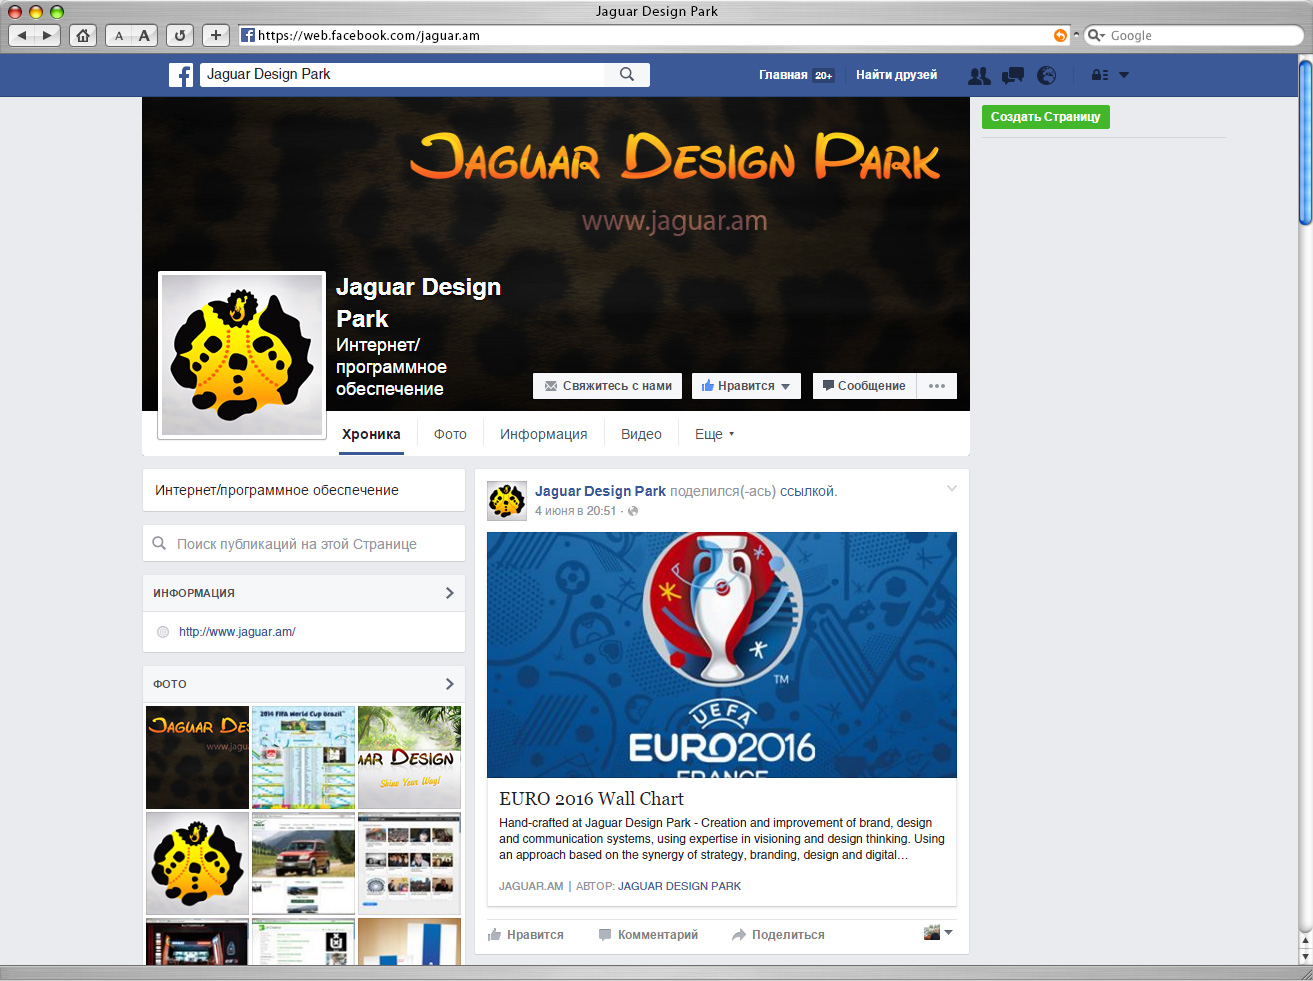 JAGUAR.am-Web Design & Development Park